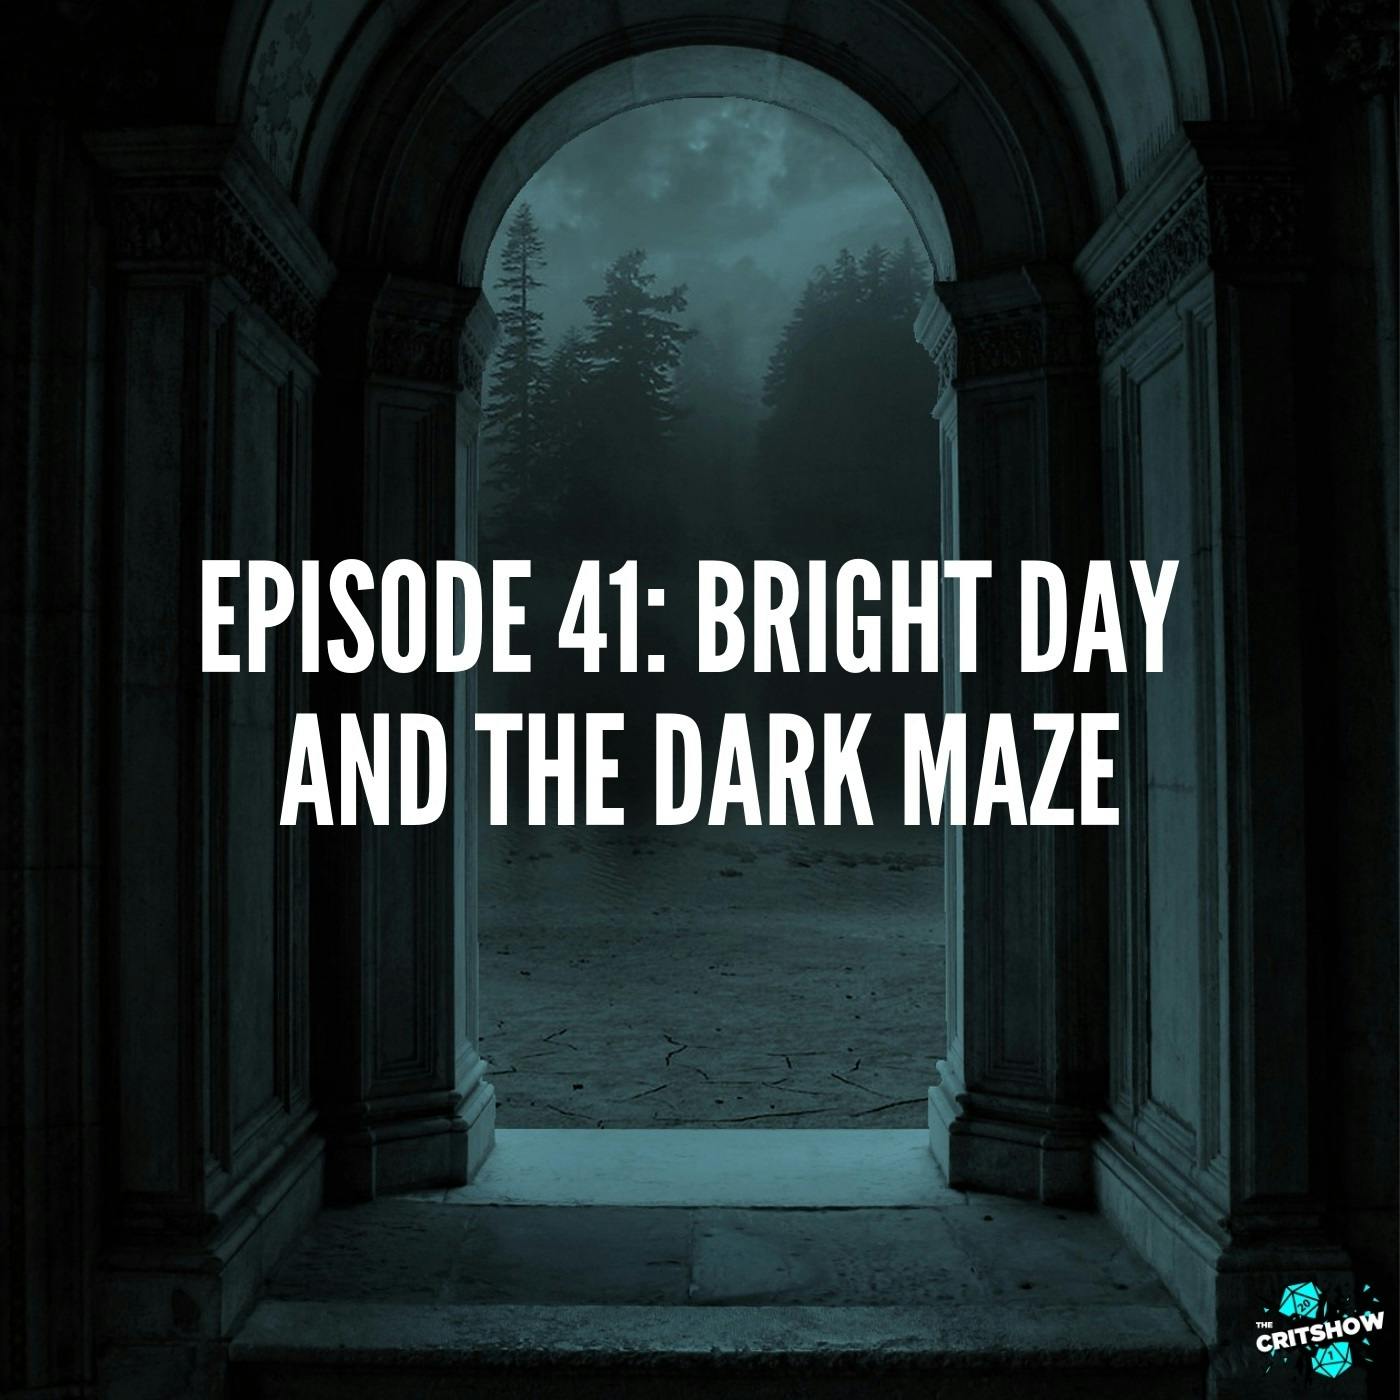 Bright Day and the Dark Maze (S1, E41)